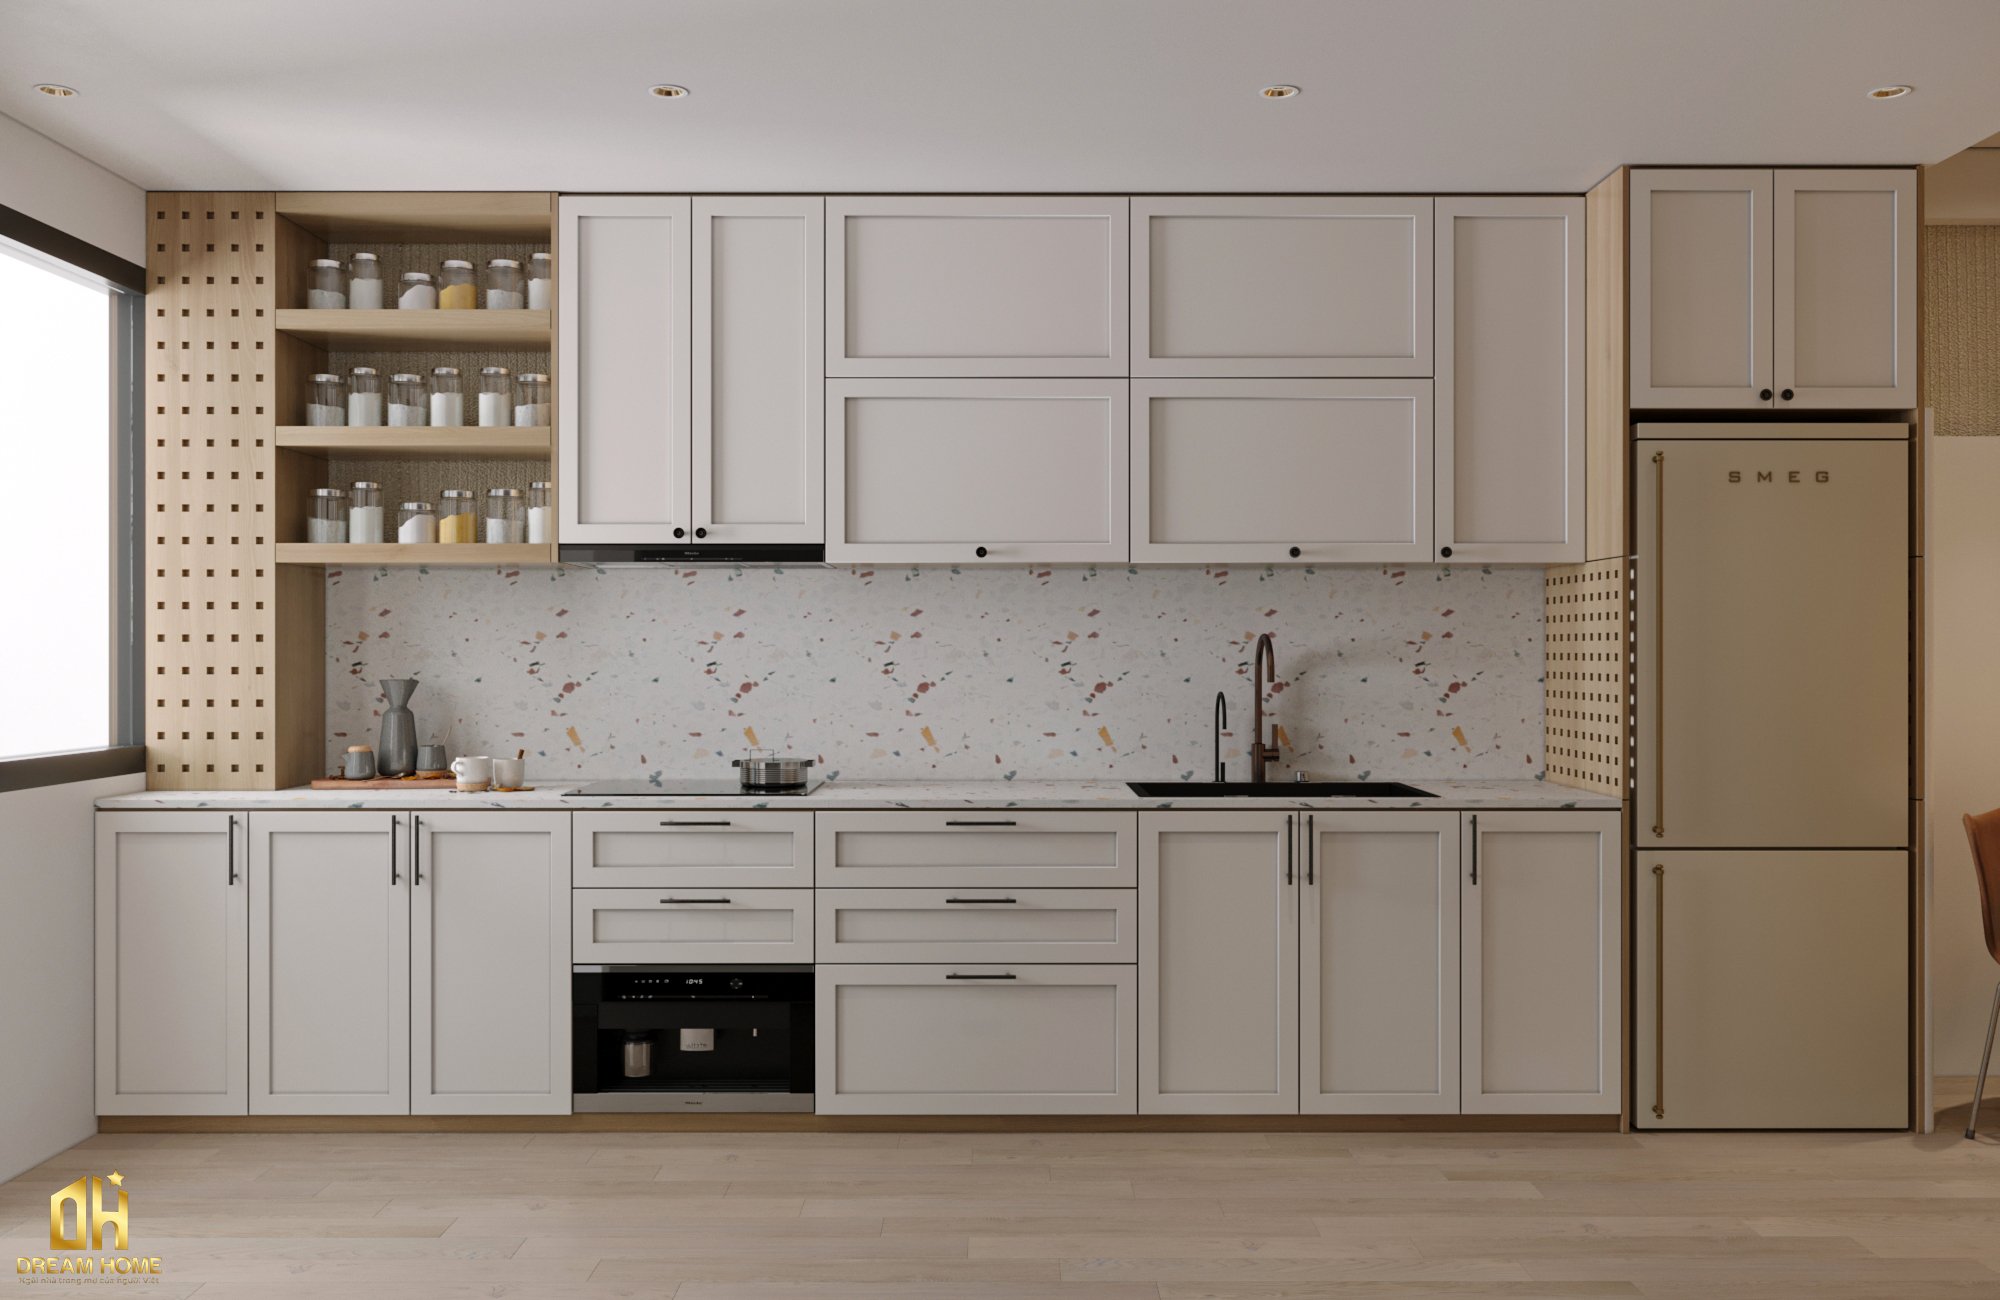 Màu trắng được sử dụng cho các phần trên của tủ bếp, tạo ra một cảm giác sáng sủa và rộng rãi.